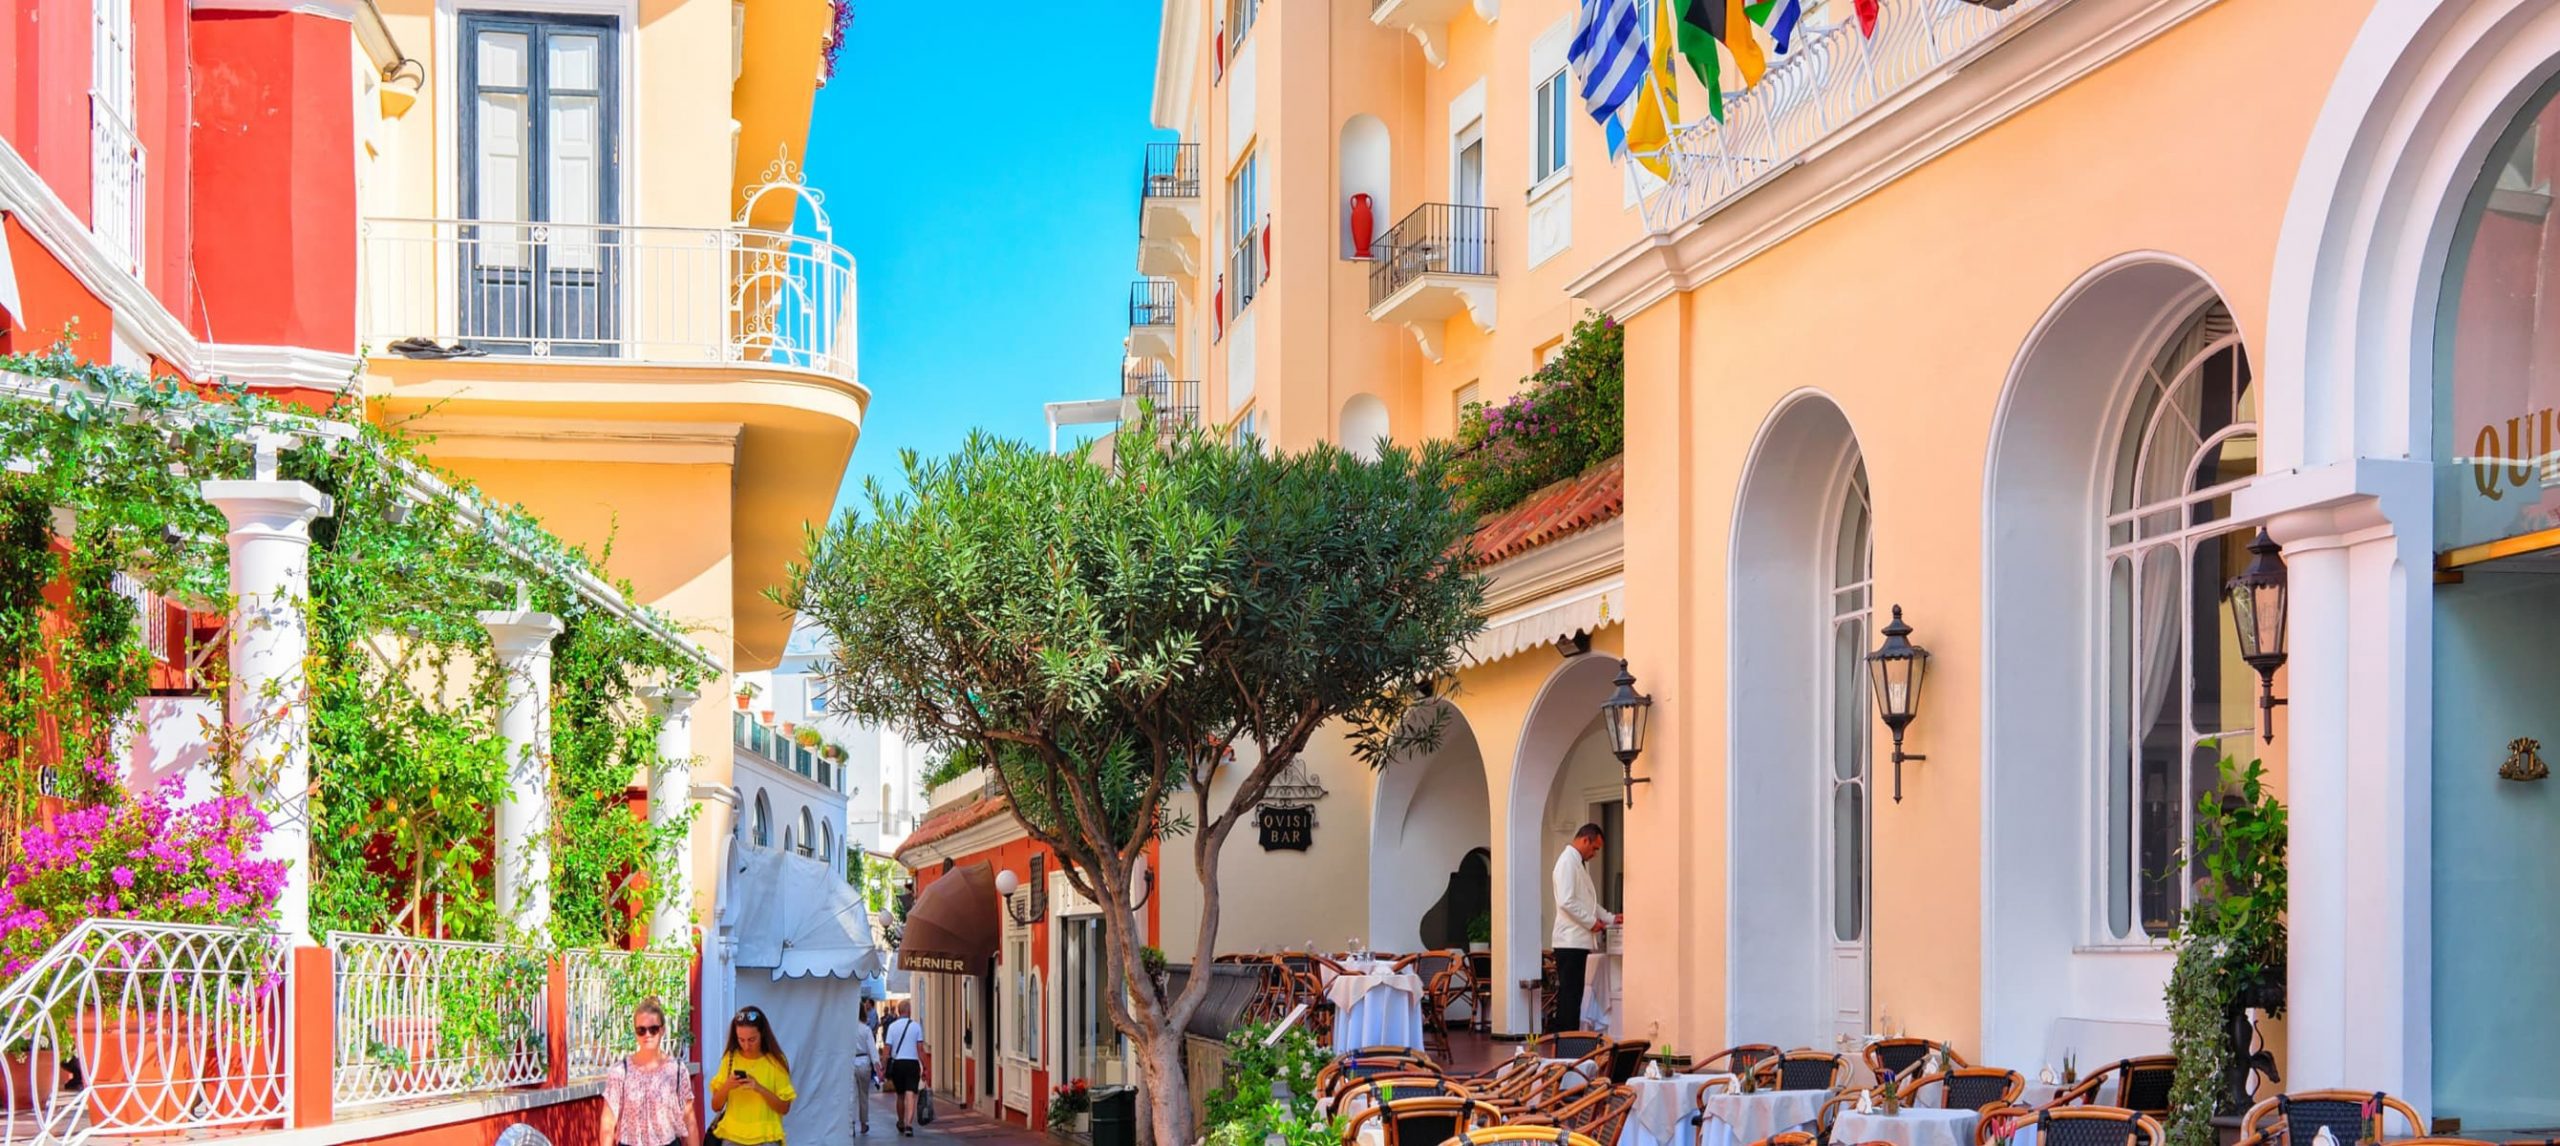 A colorful street in Capri